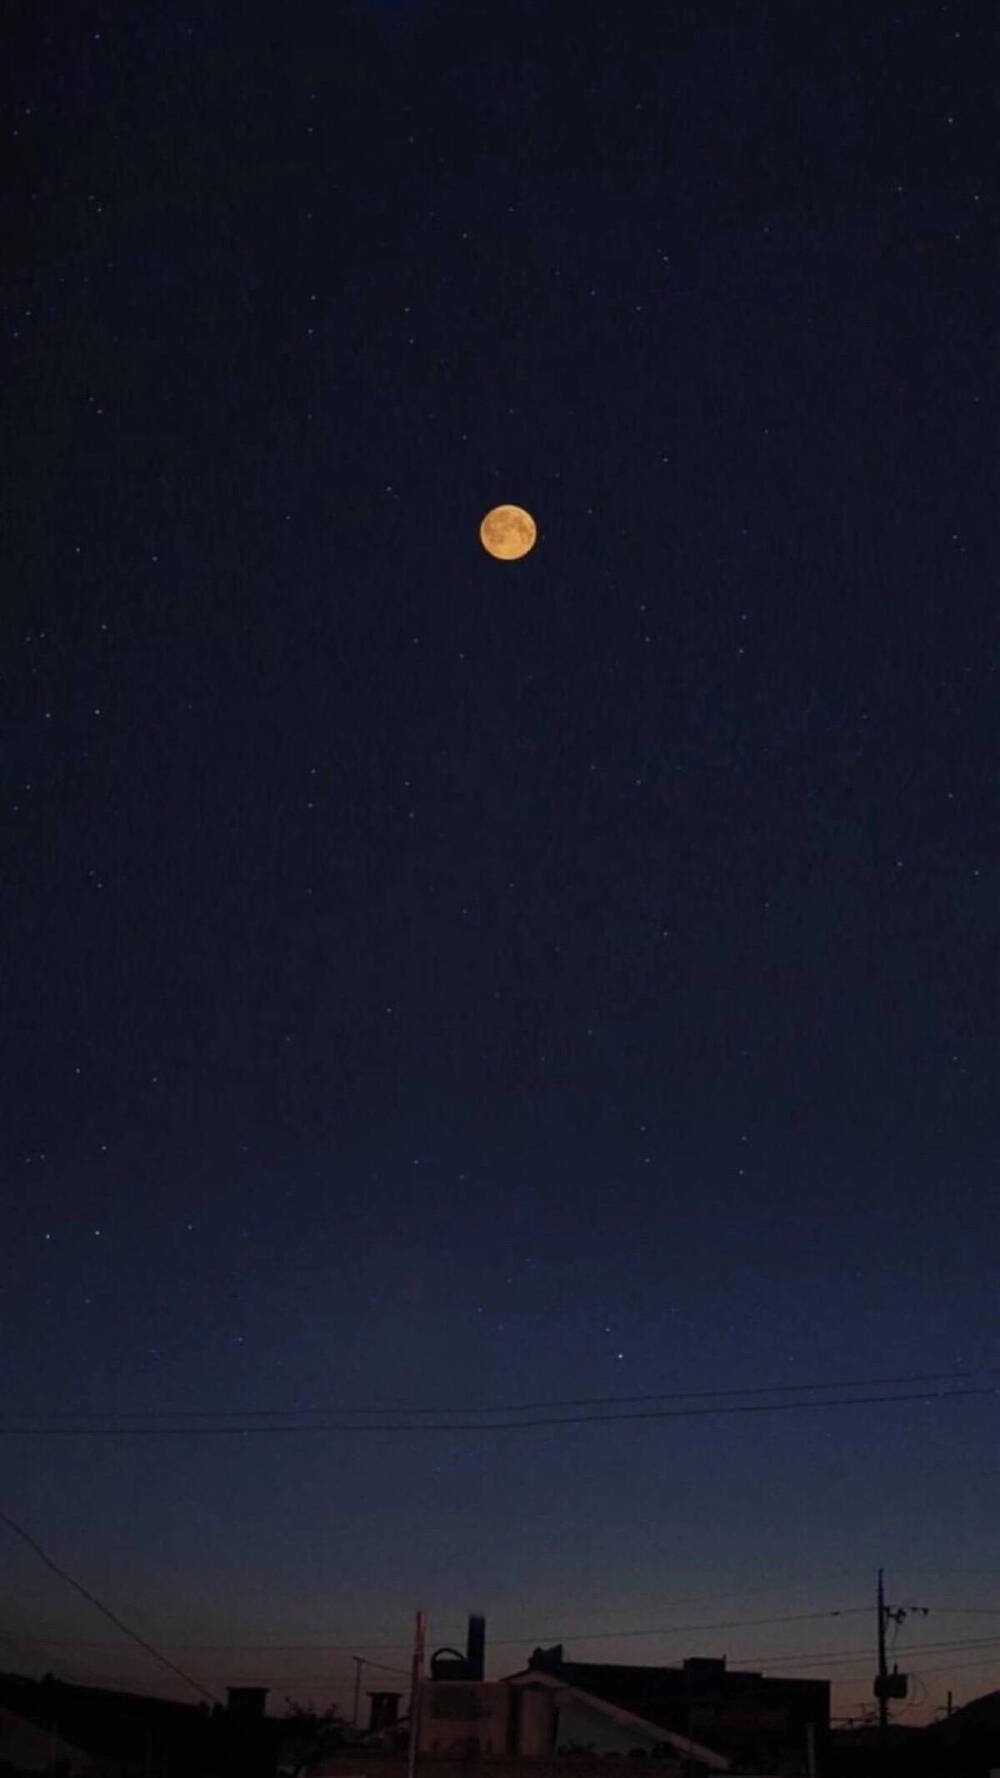 月亮背景图微信图片